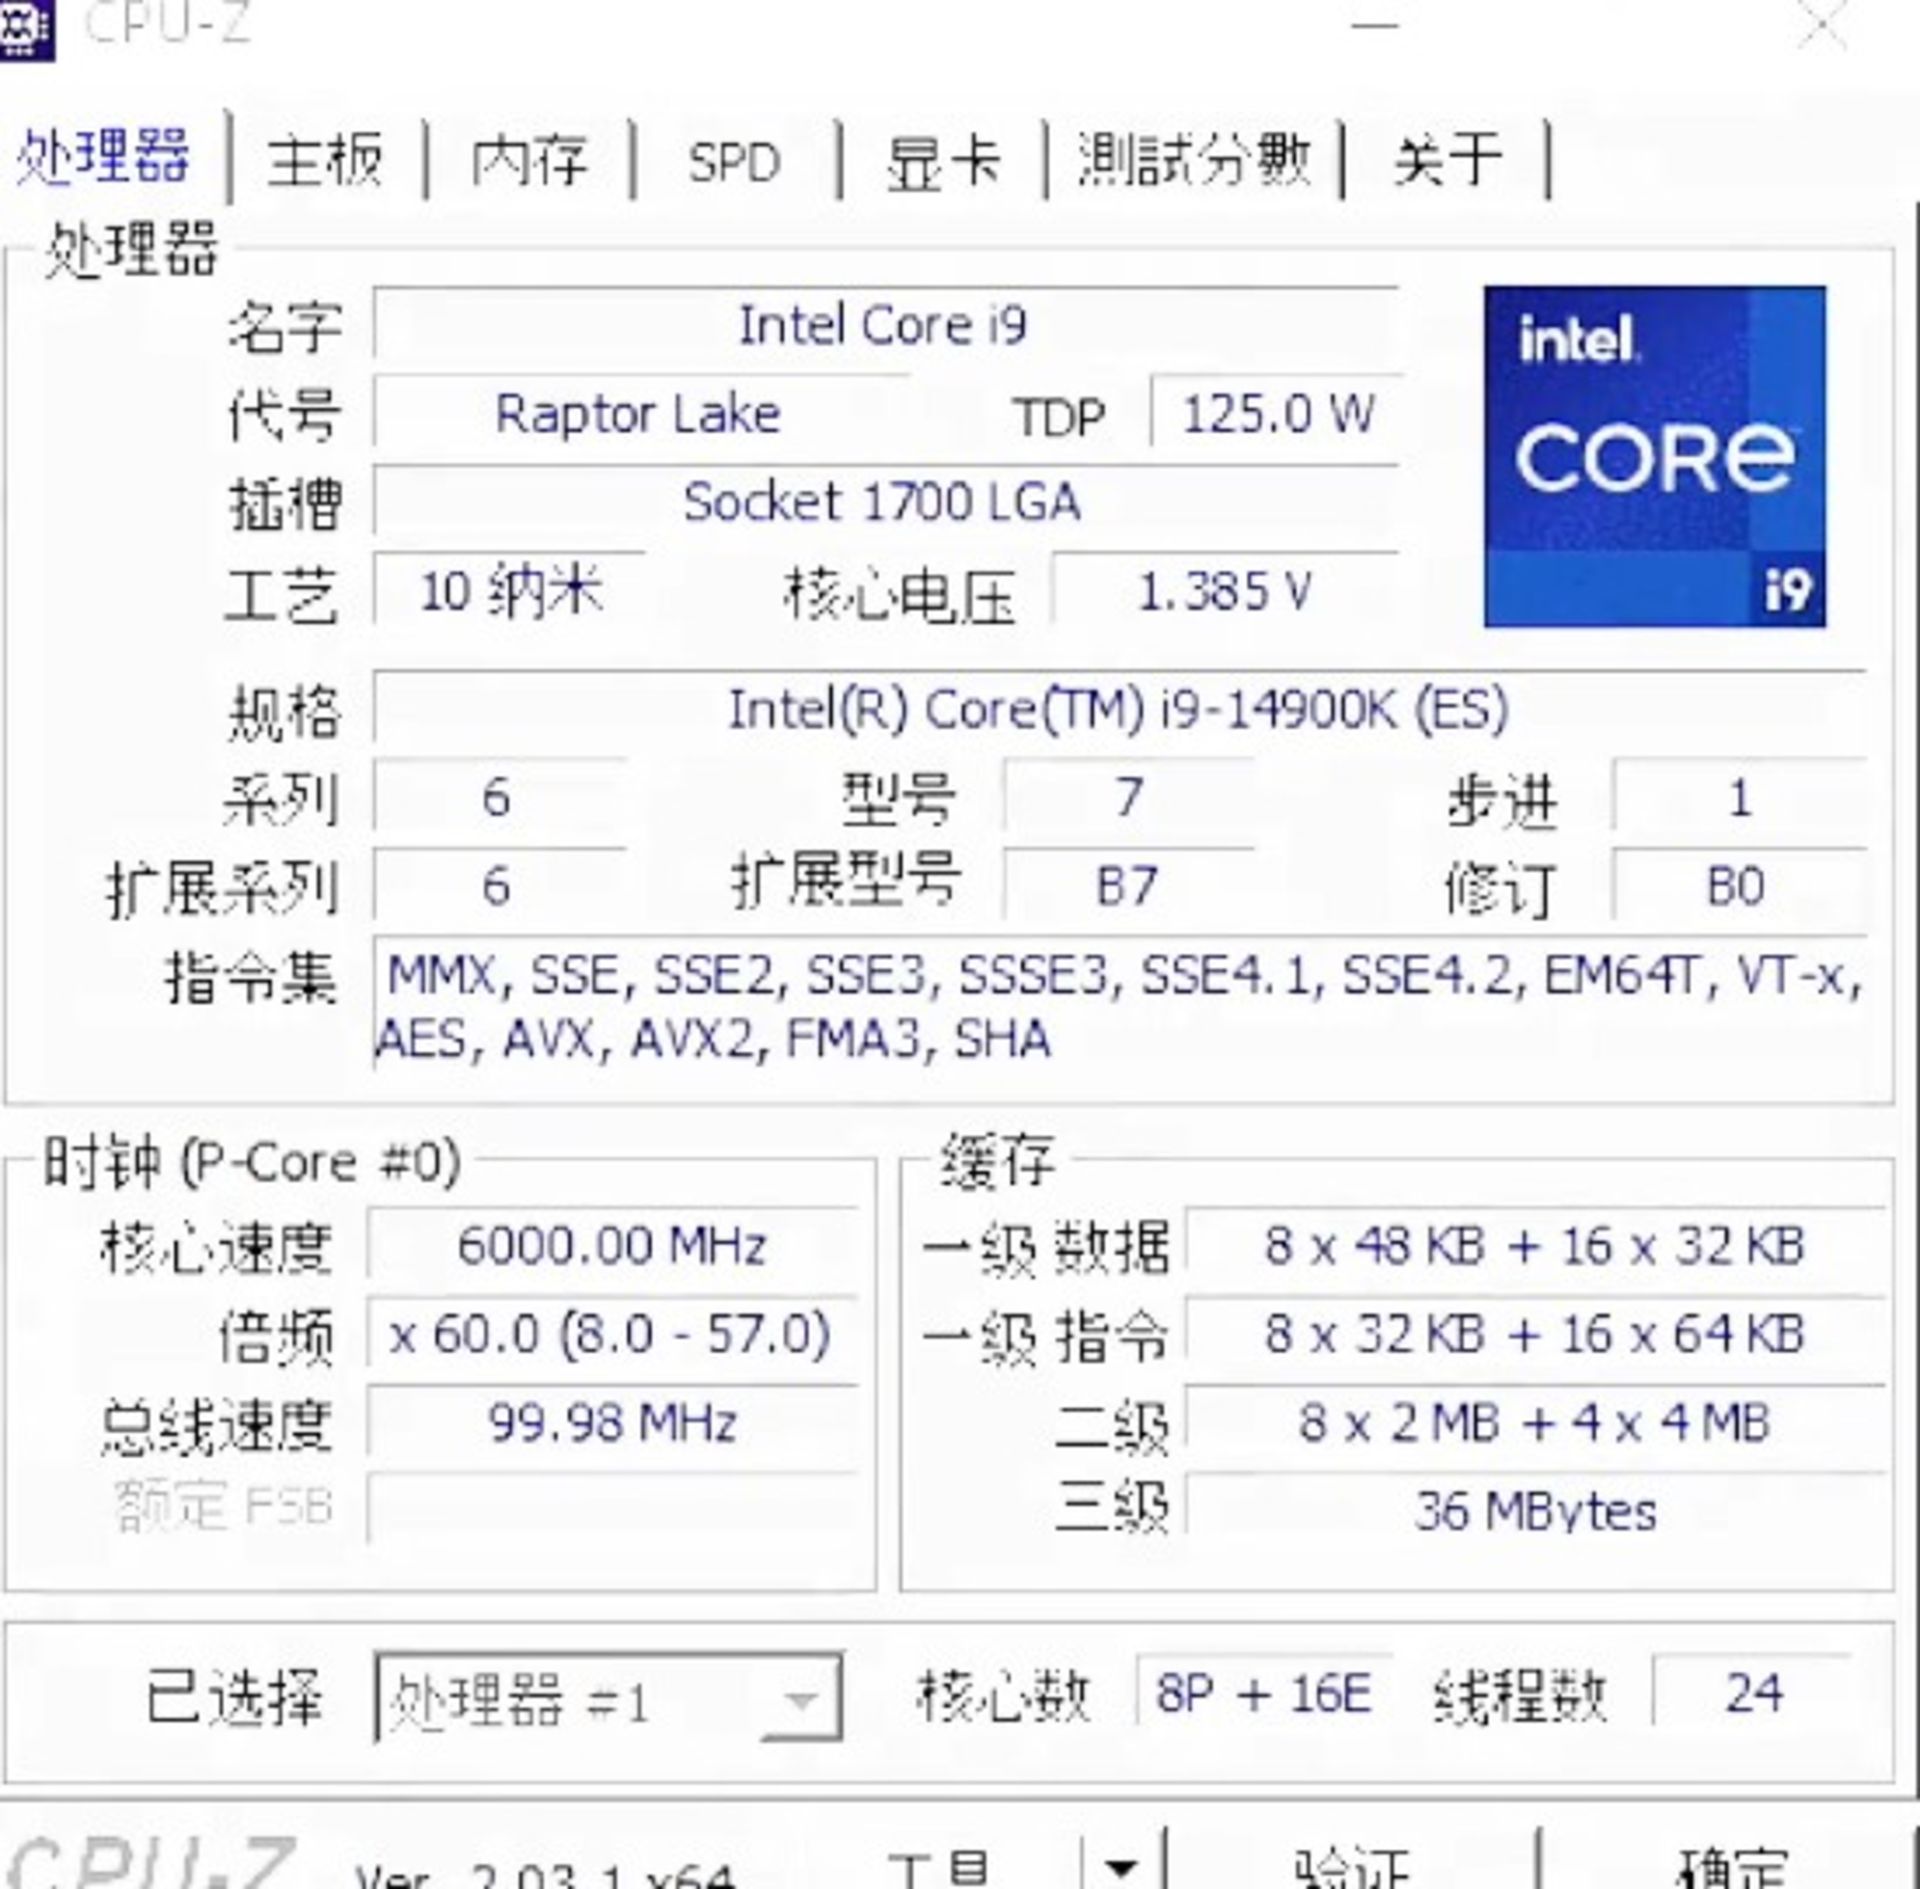 عملکرد Core i9-14900k در معیار CPU-z